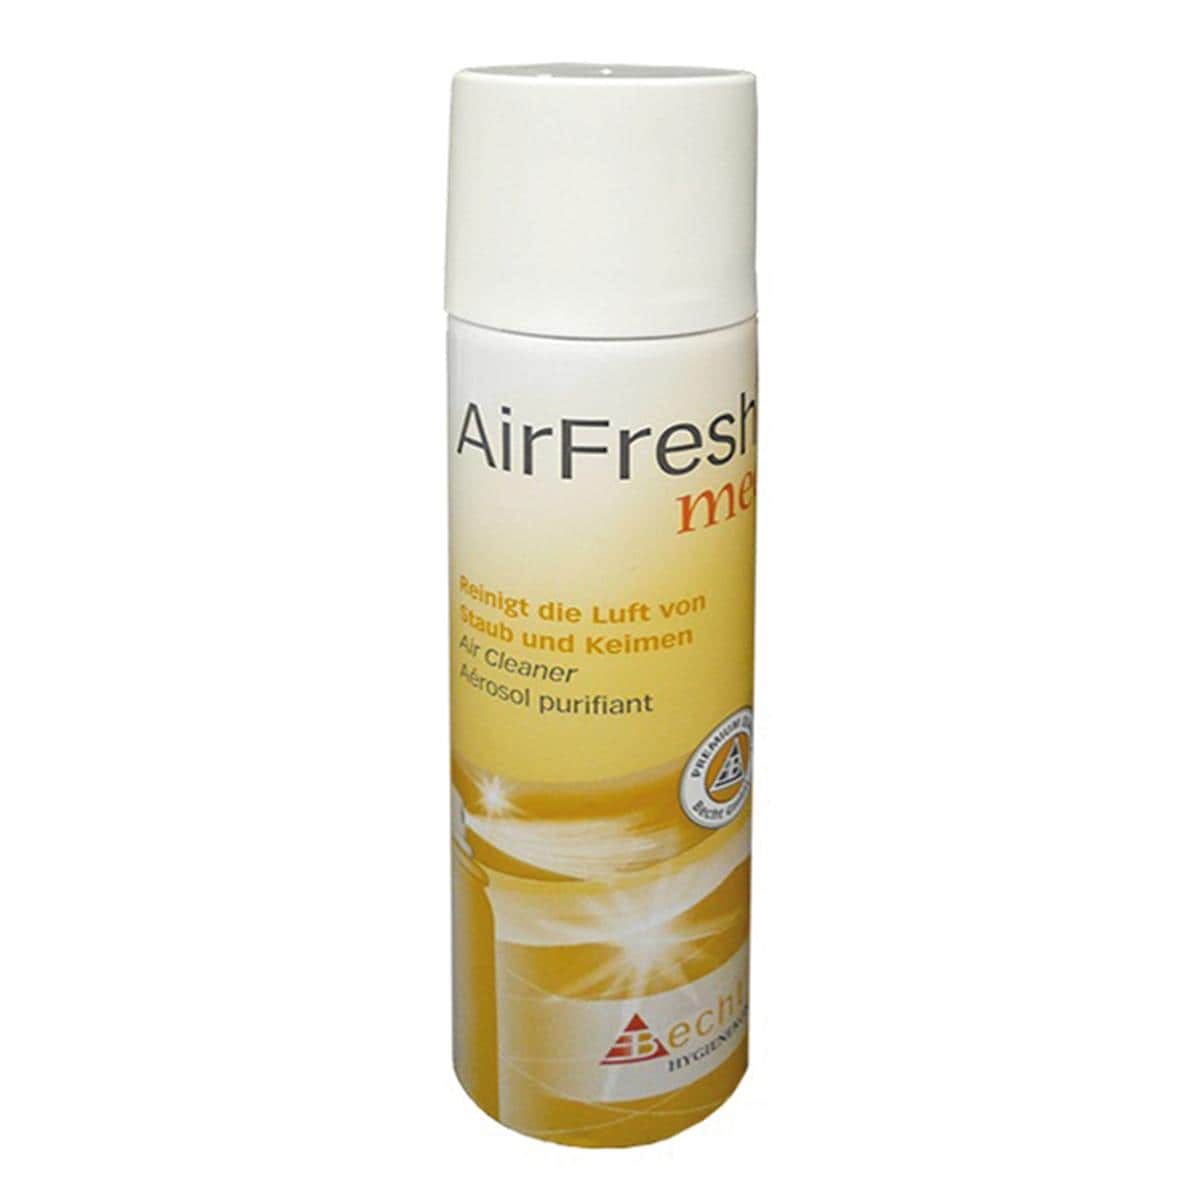 Airfresh Med (Ozium) - spuitbus 75 ml